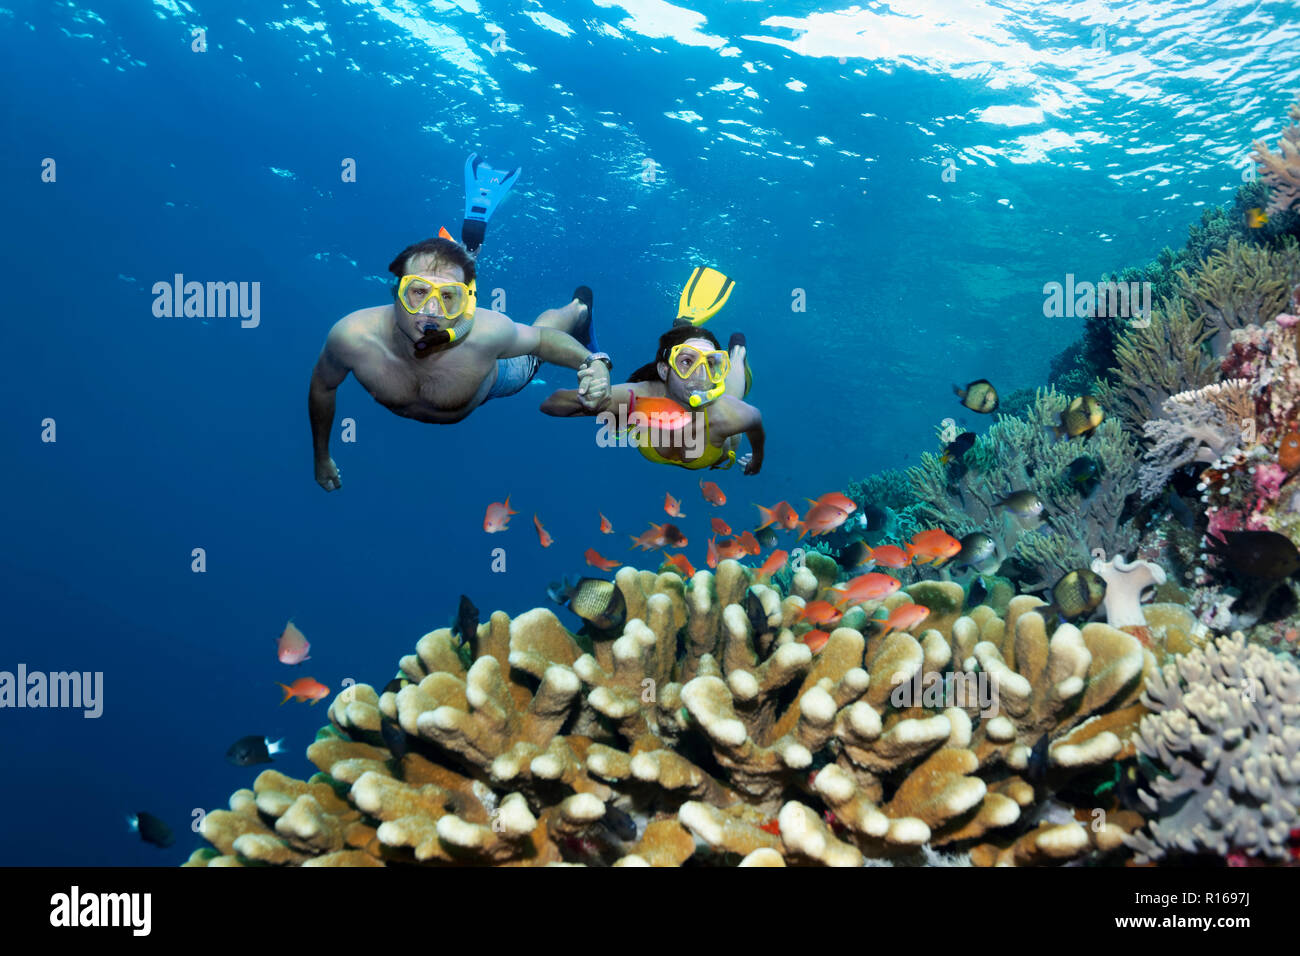 Paire, snorkeler, plonge la main dans la main sur les récifs coralliens, regarde les poissons, flagfishes Anthiadinae () reeffish, Grande Barrière de Corail Banque D'Images